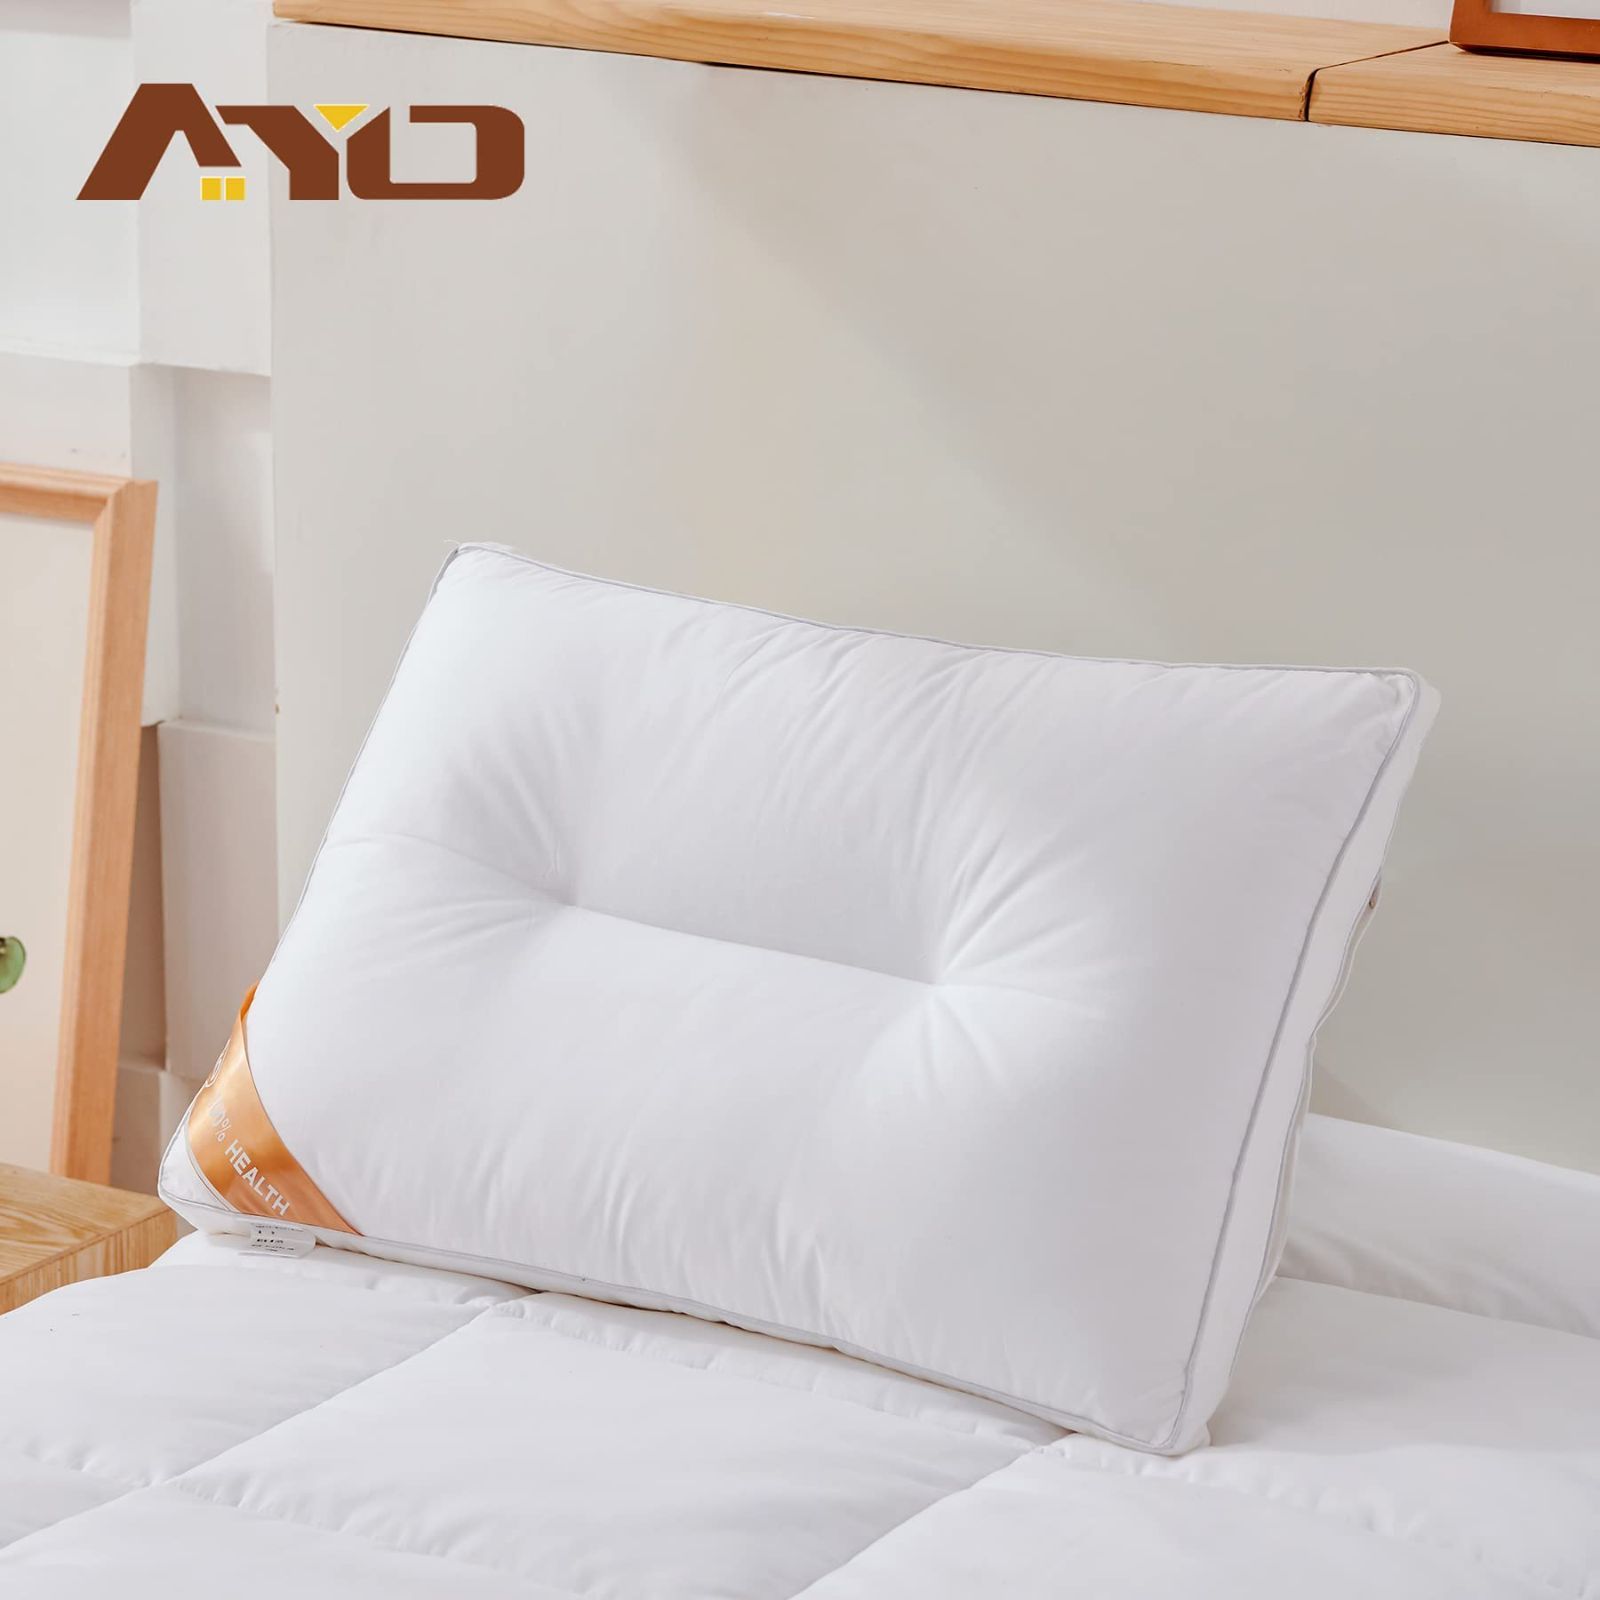 新品 AYO 枕 低反発まくら 高級ホテル仕様 丸洗い可能 高さ調節可能